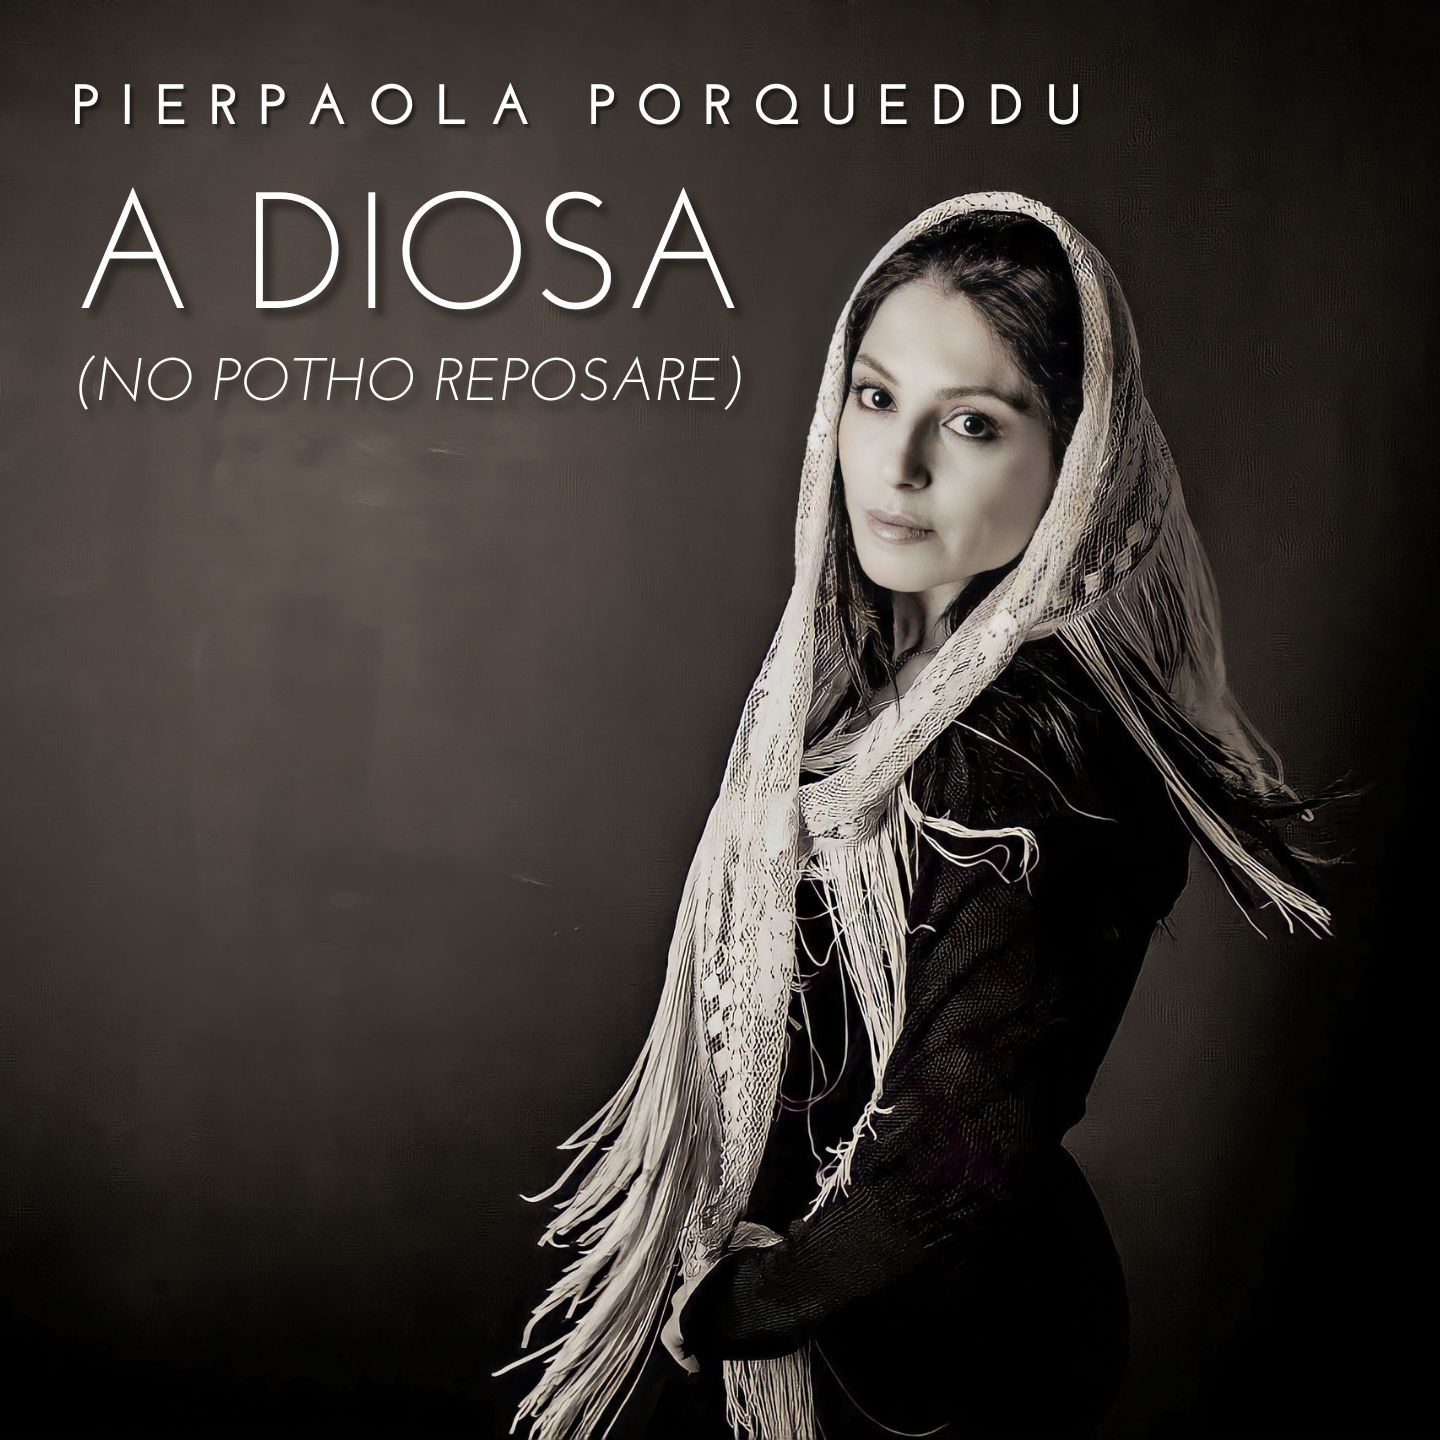 A Diosa (No potho reposare - Arr. per pianoforte di Fabio Biffi)